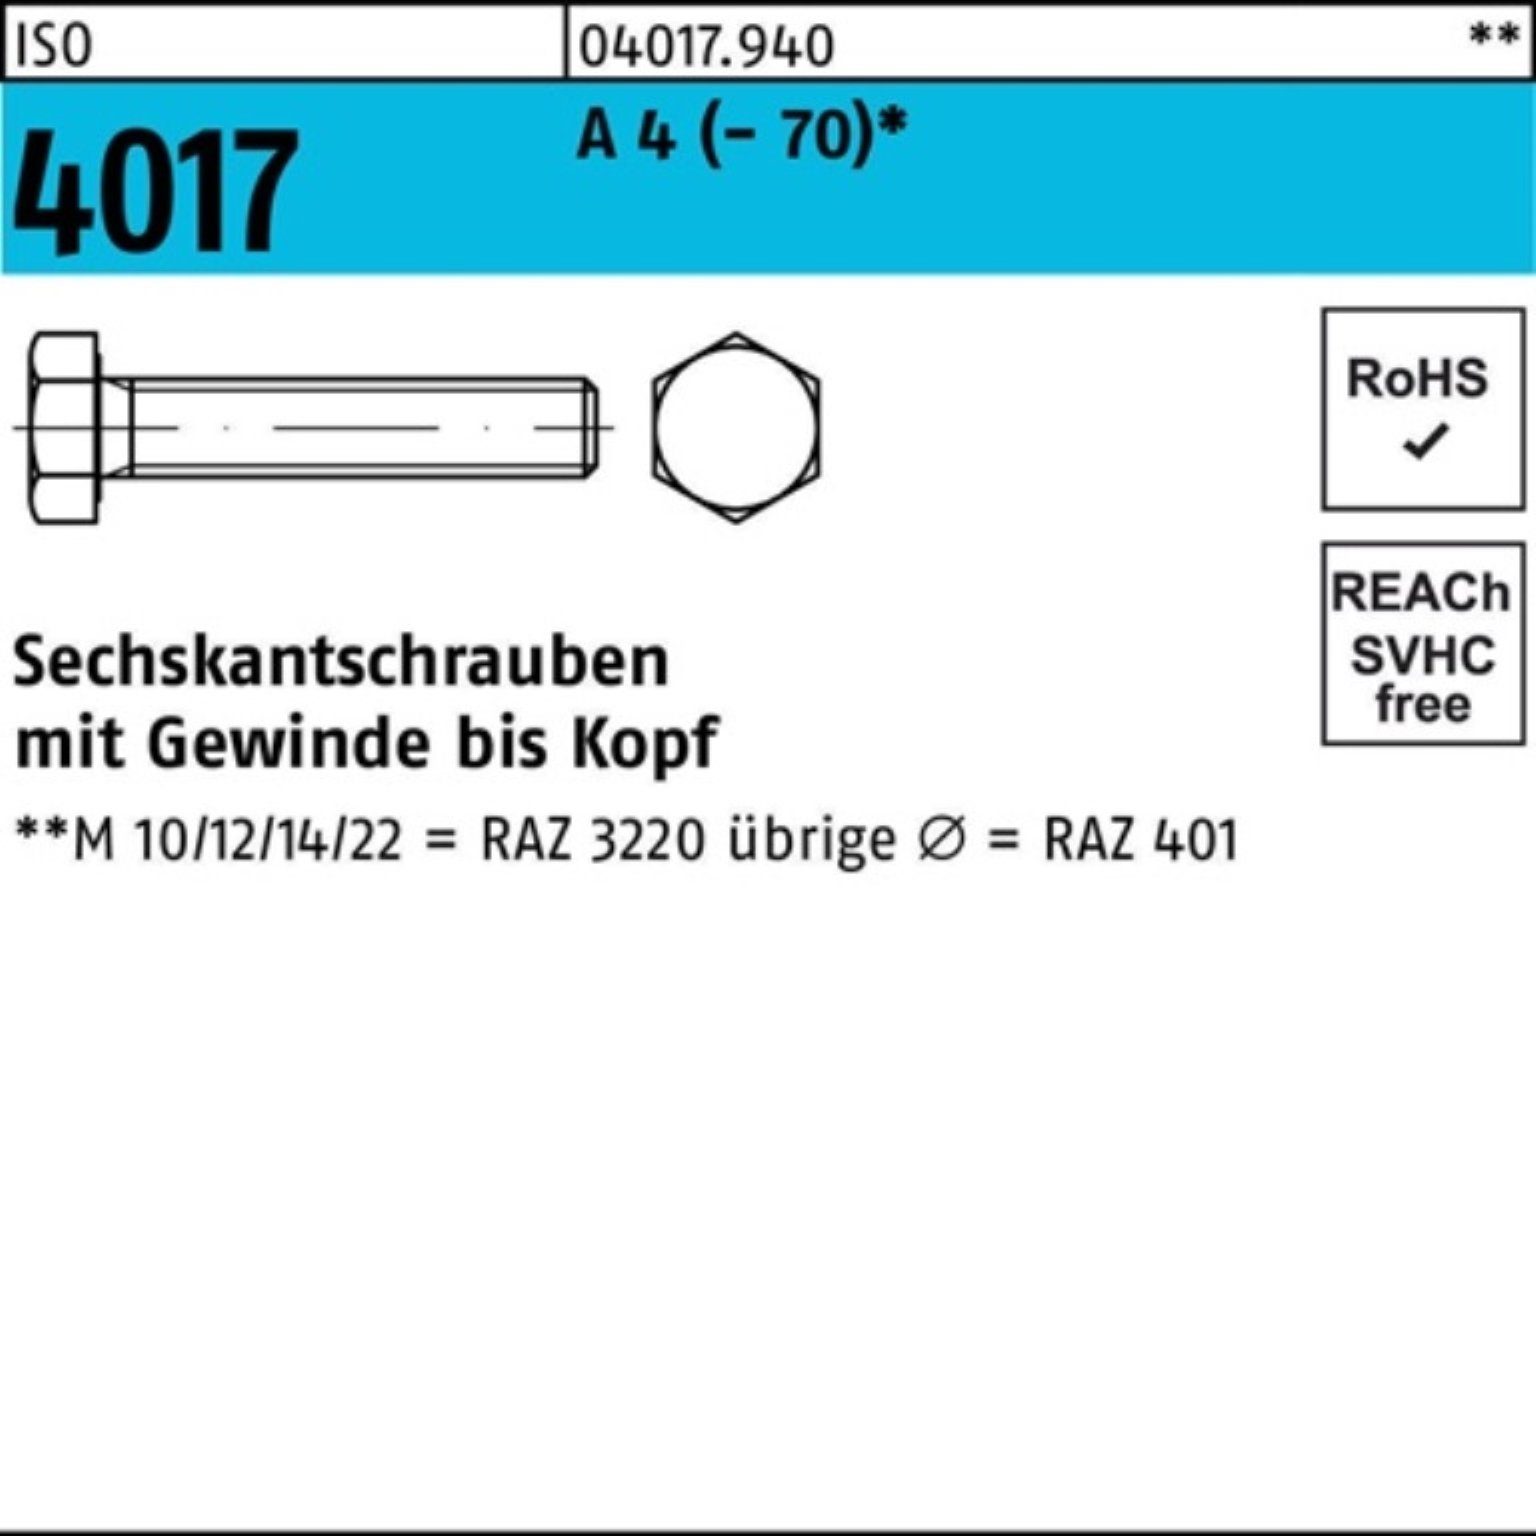 Bufab Sechskantschraube Pack 4017 1 ISO 4 VG M16x Stück A 100er 190 Sechskantschraube (70)